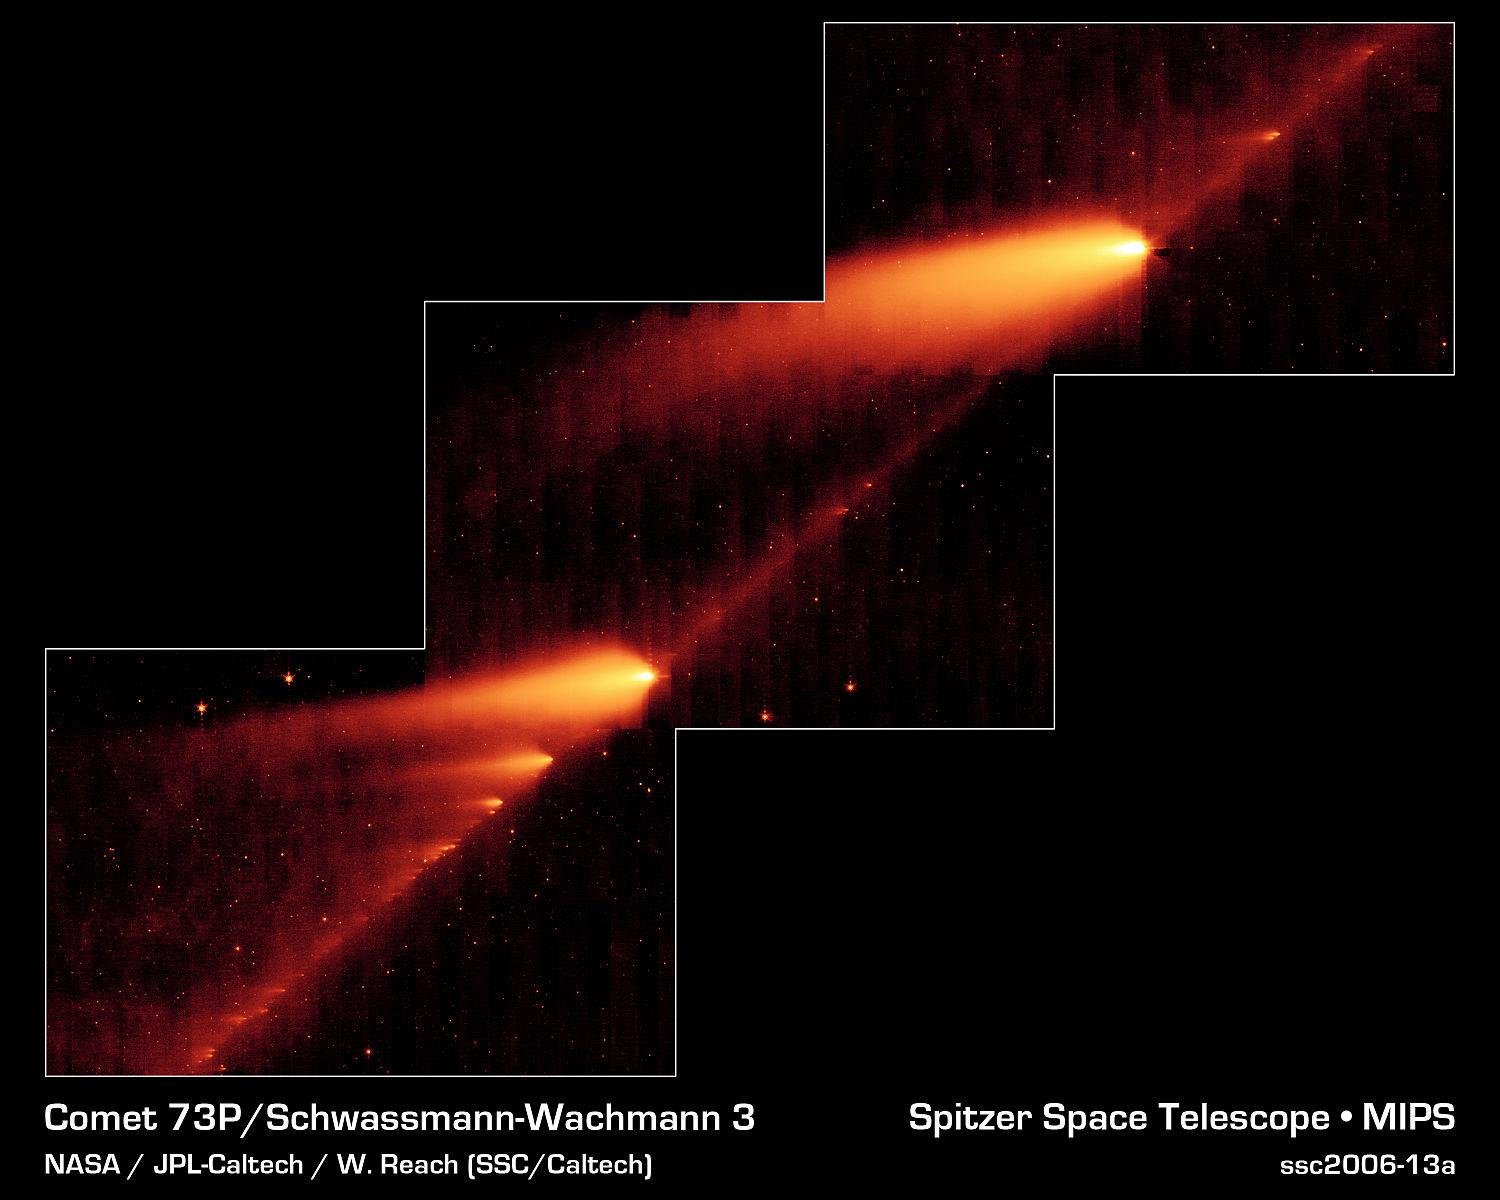 Fonte: NASA/JPL-Caltech/W. Reach/Reprodução.